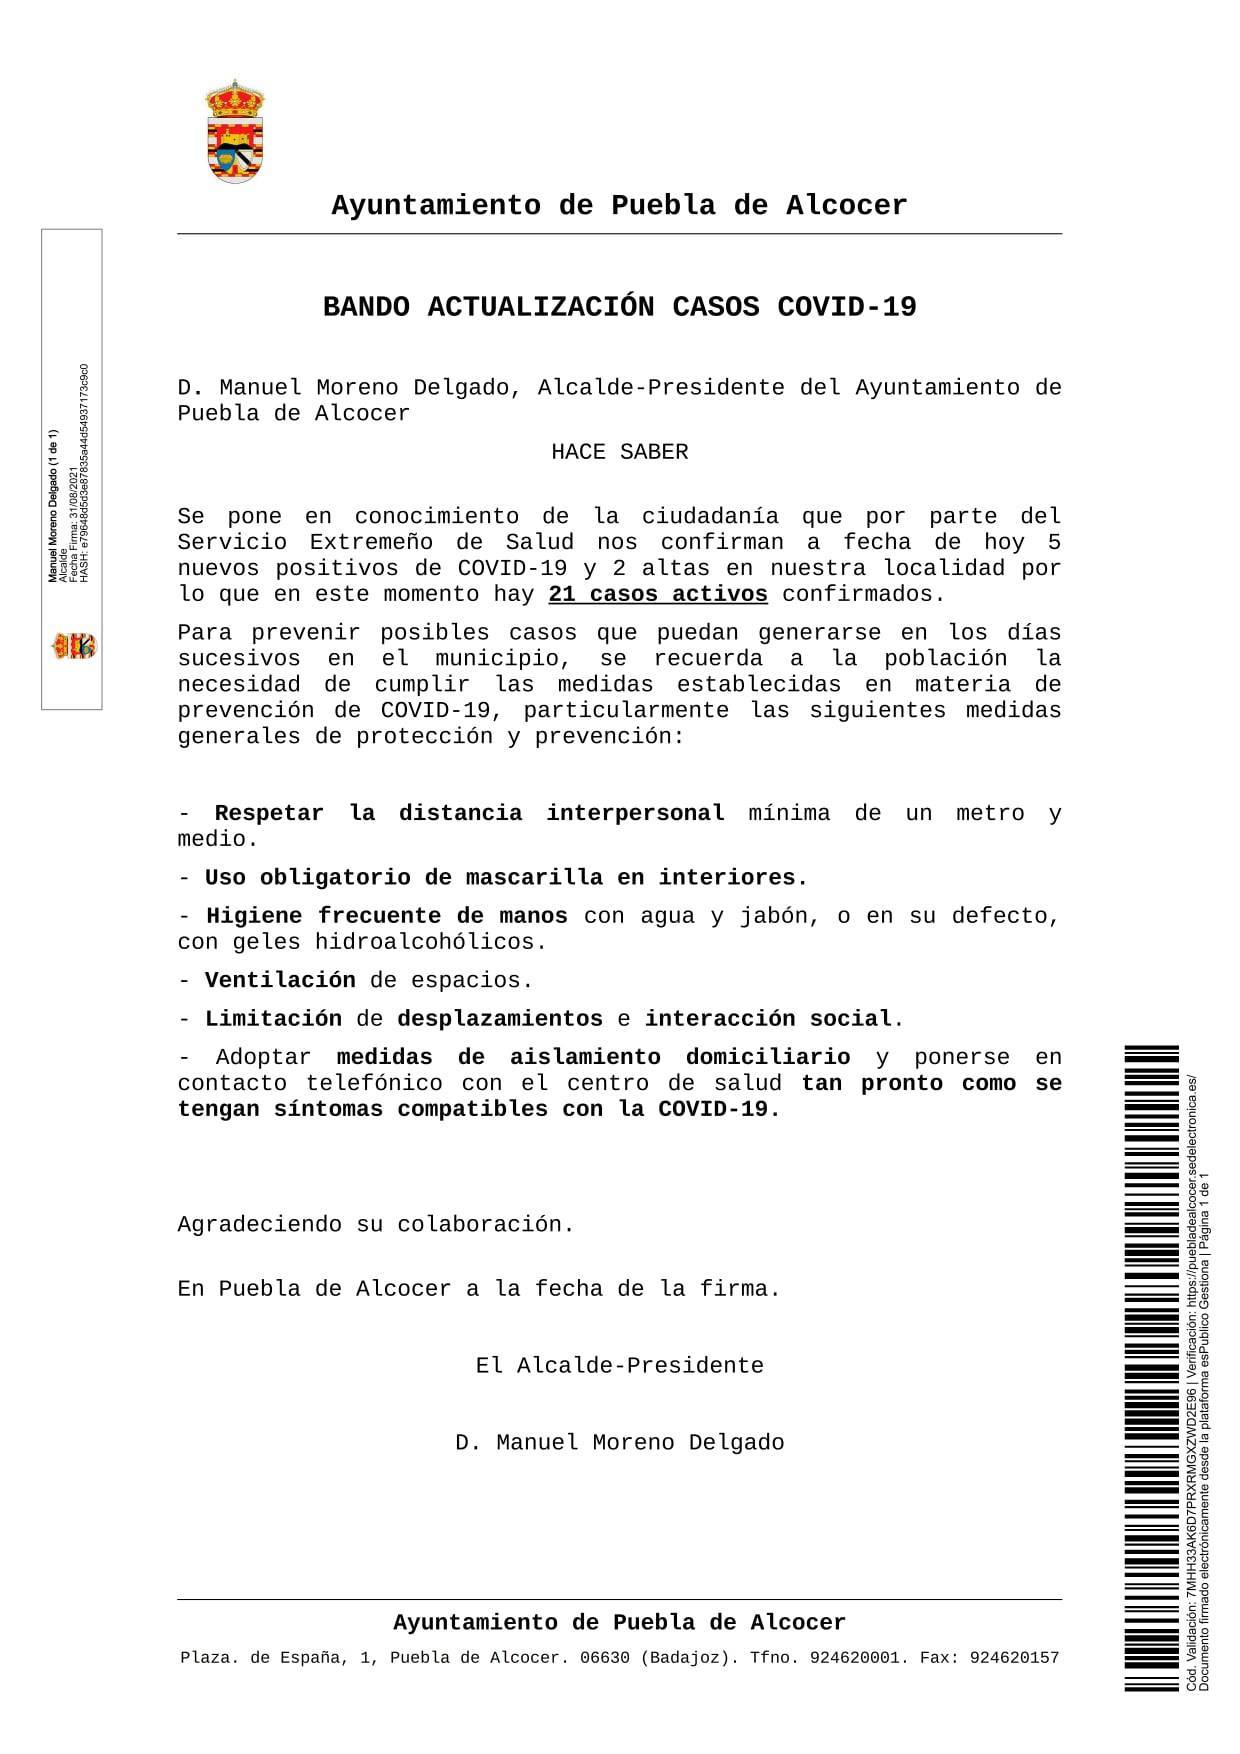 21 casos positivos activos de COVID-19 (agosto 2021) - Puebla de Alcocer (Badajoz)